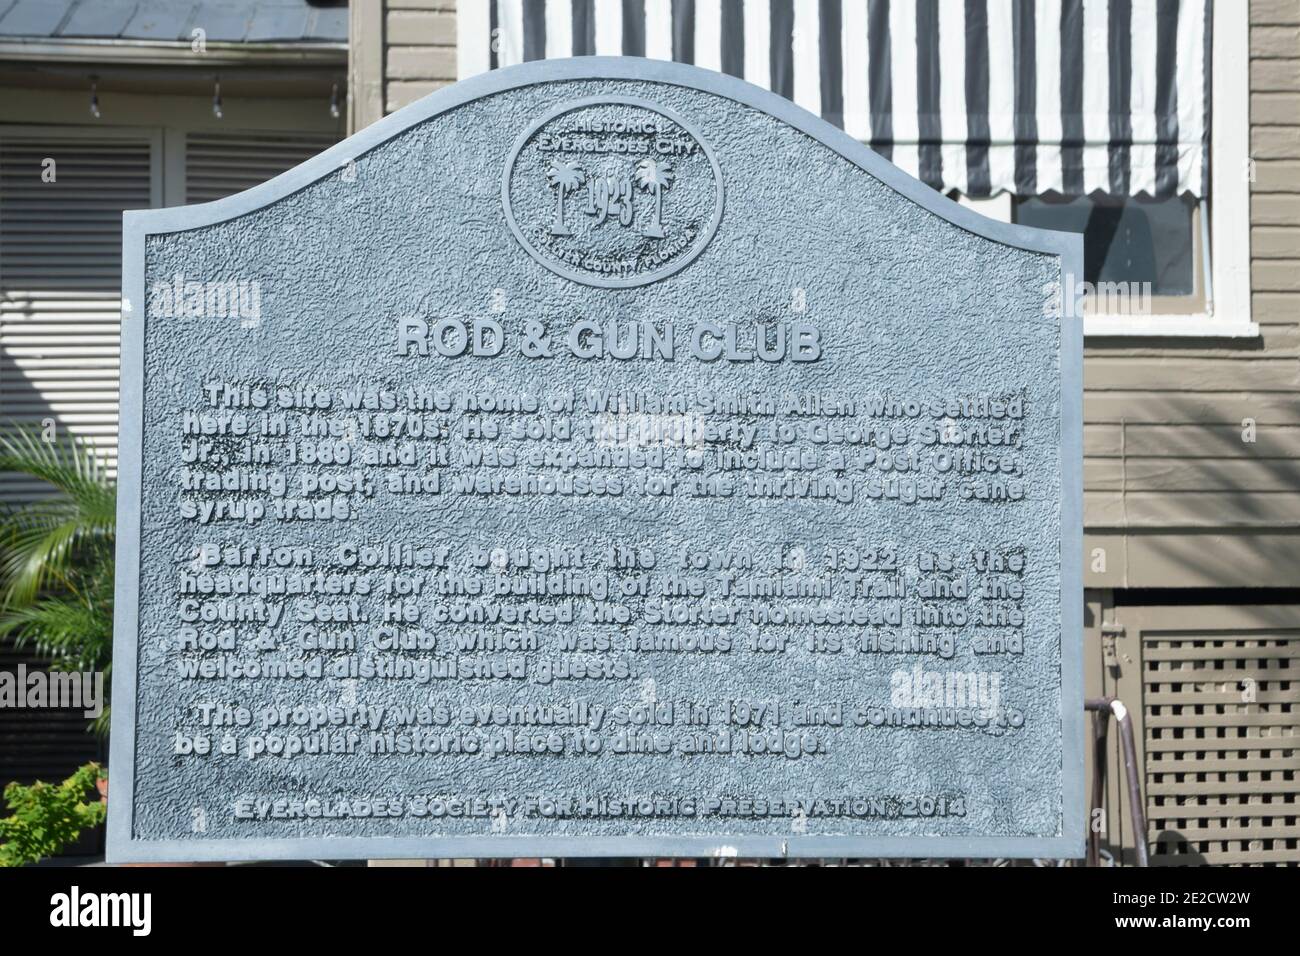 Un marcador muestra un suspiro describiendo el histórico Everglades City Rod & Gun Club. Foto de stock